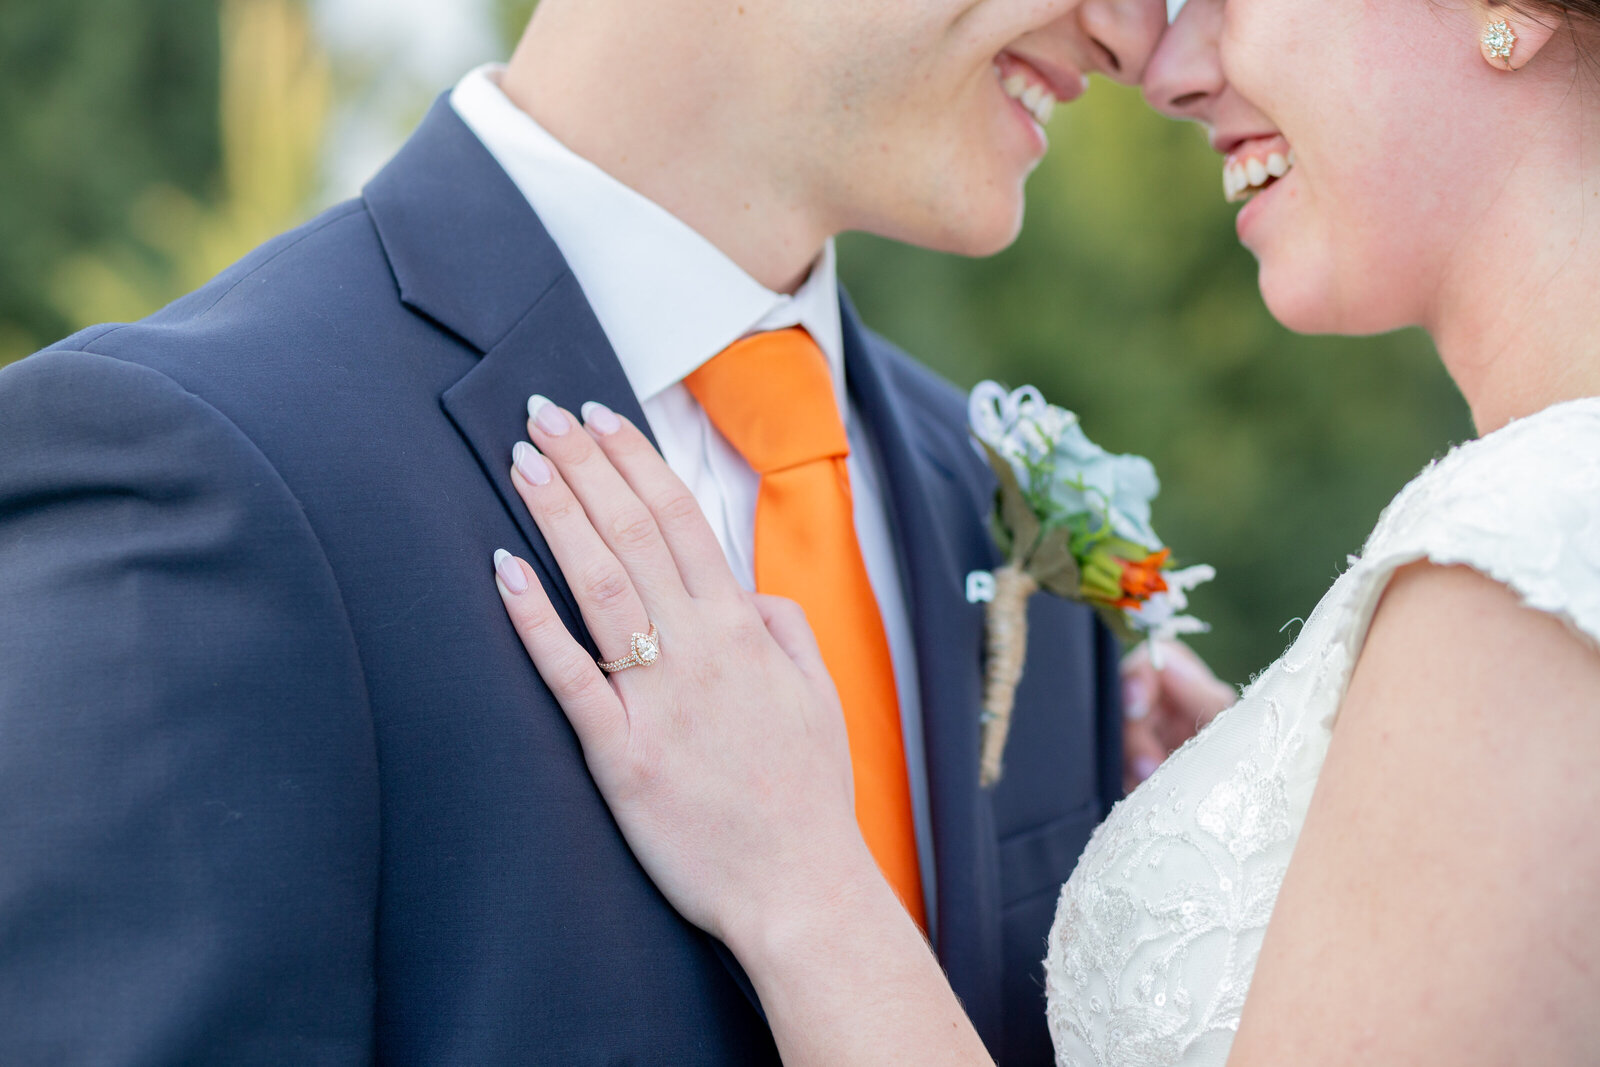 Idaho wedding photographers capture bridal details